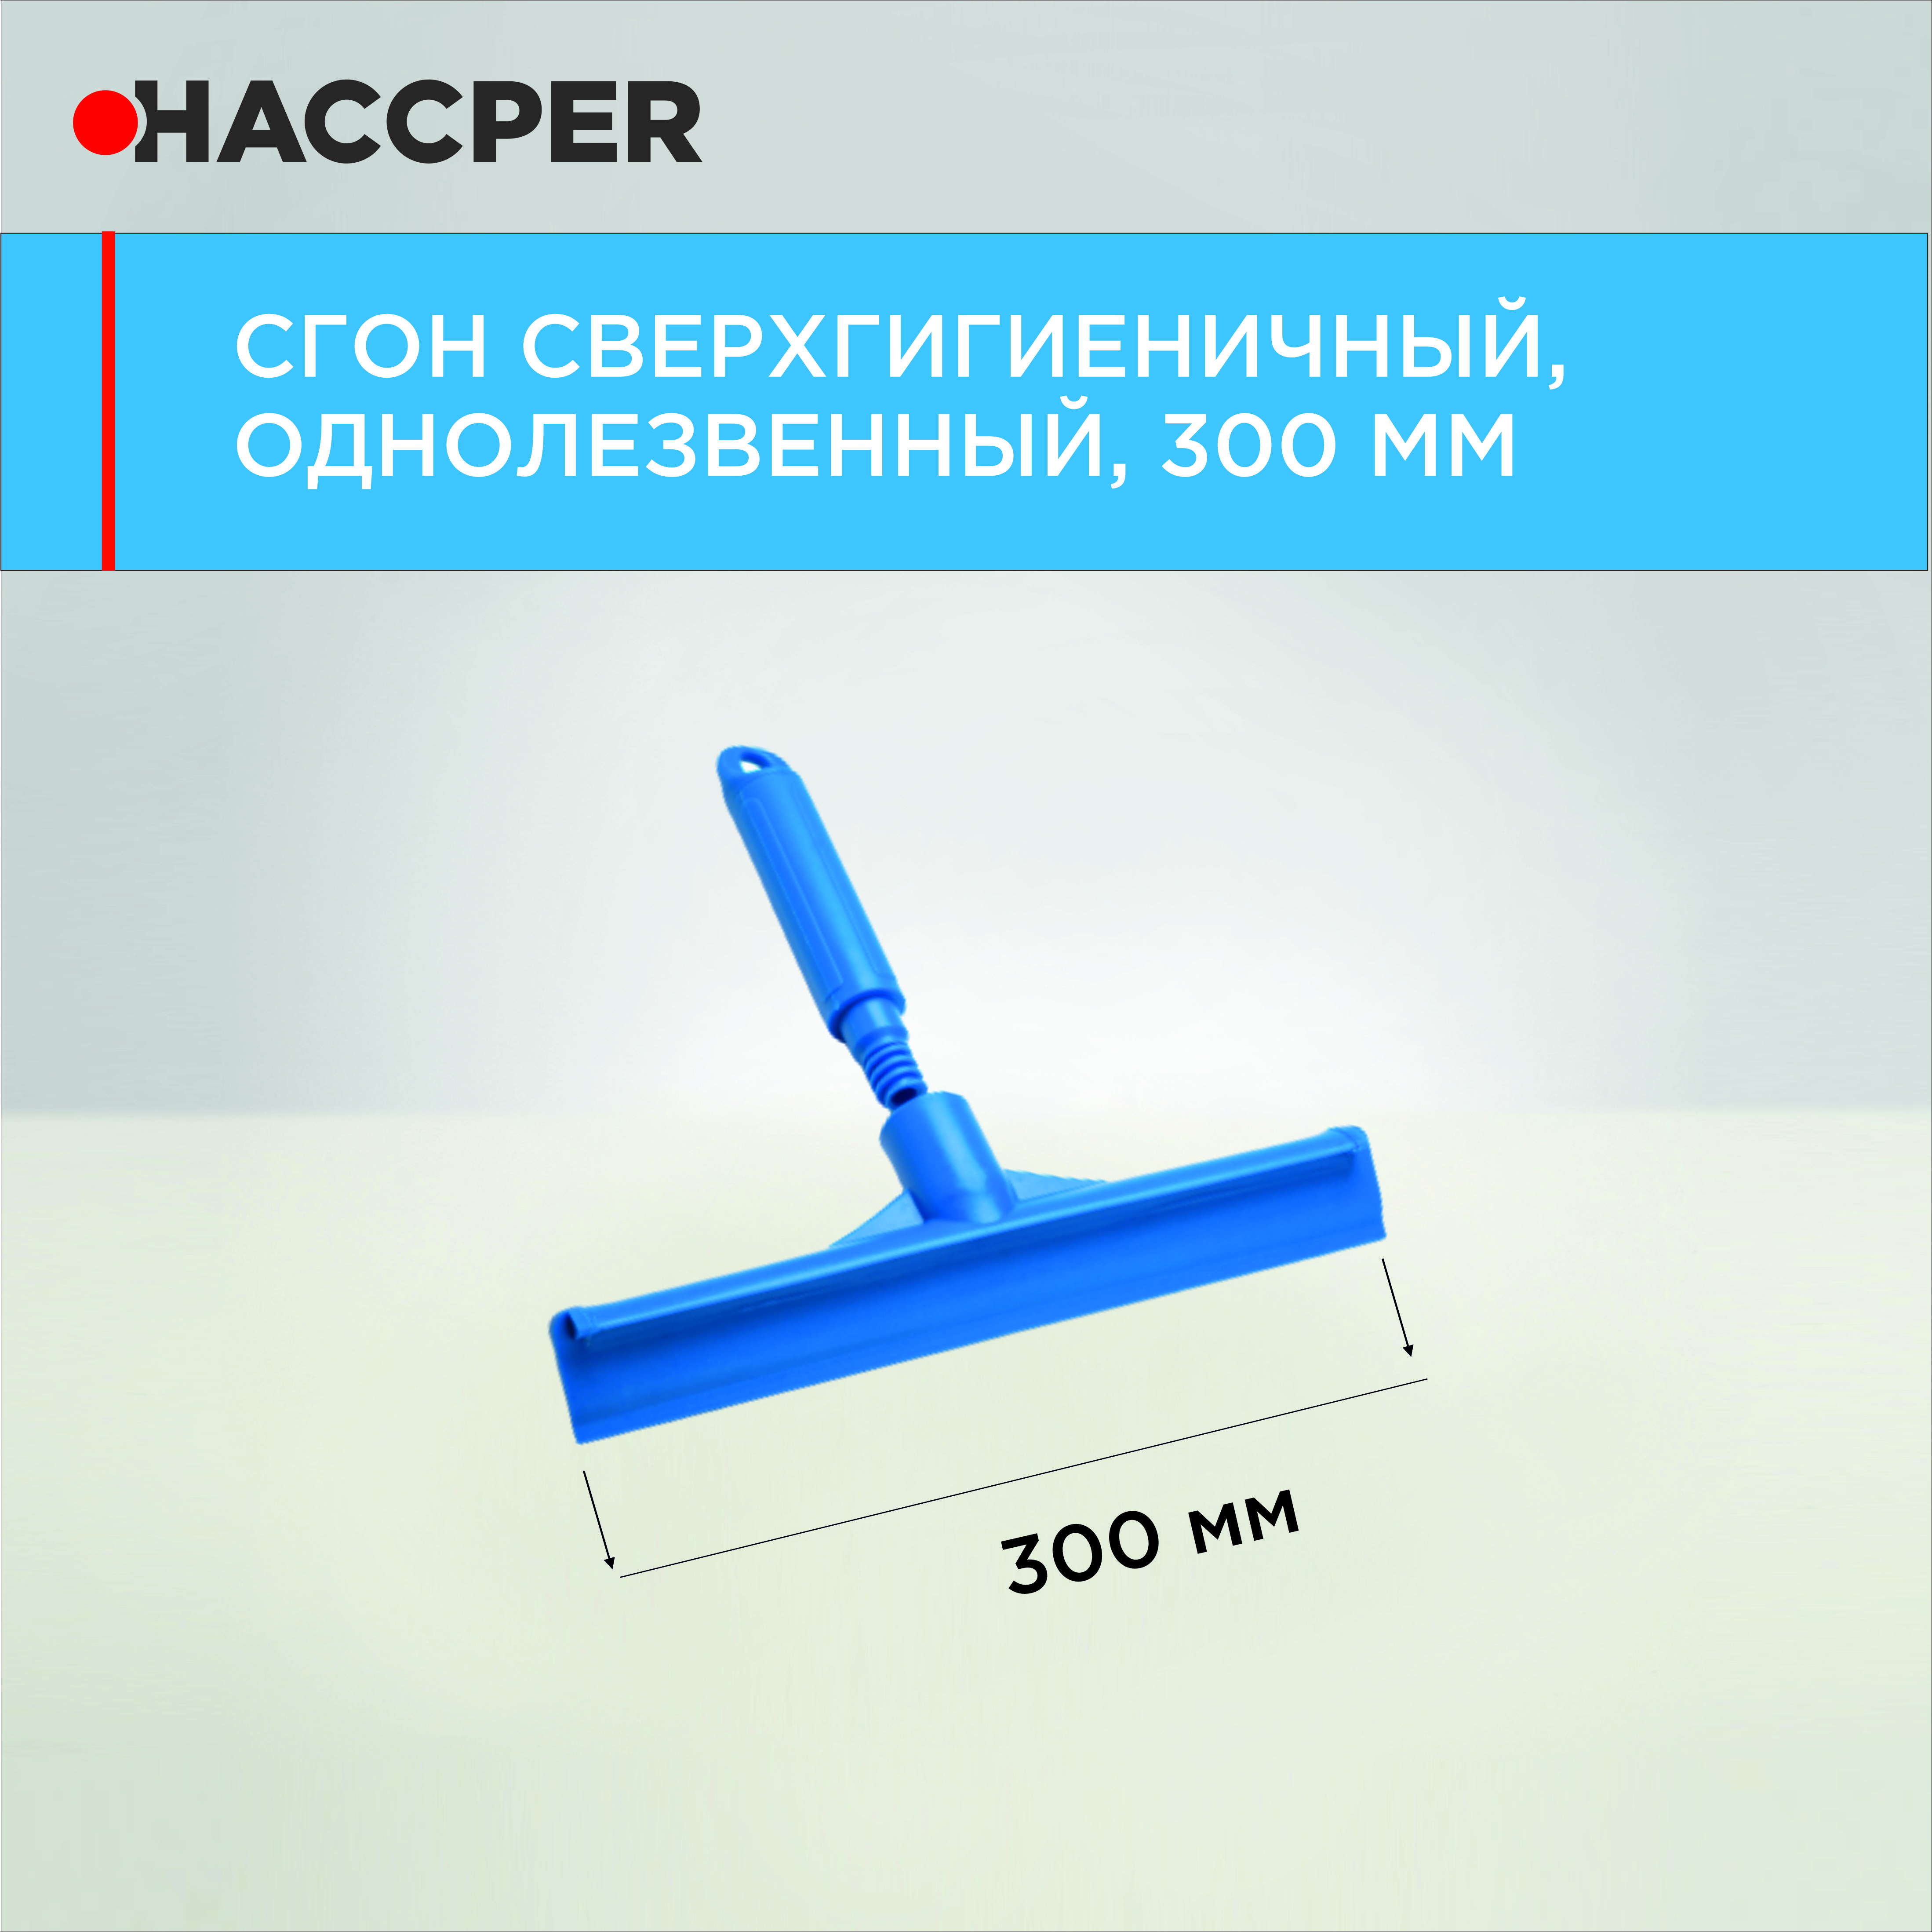 Сгон HACCPER сверхгигиеничный ручной однолезвенный с мини-рукояткой, 300 мм, синий